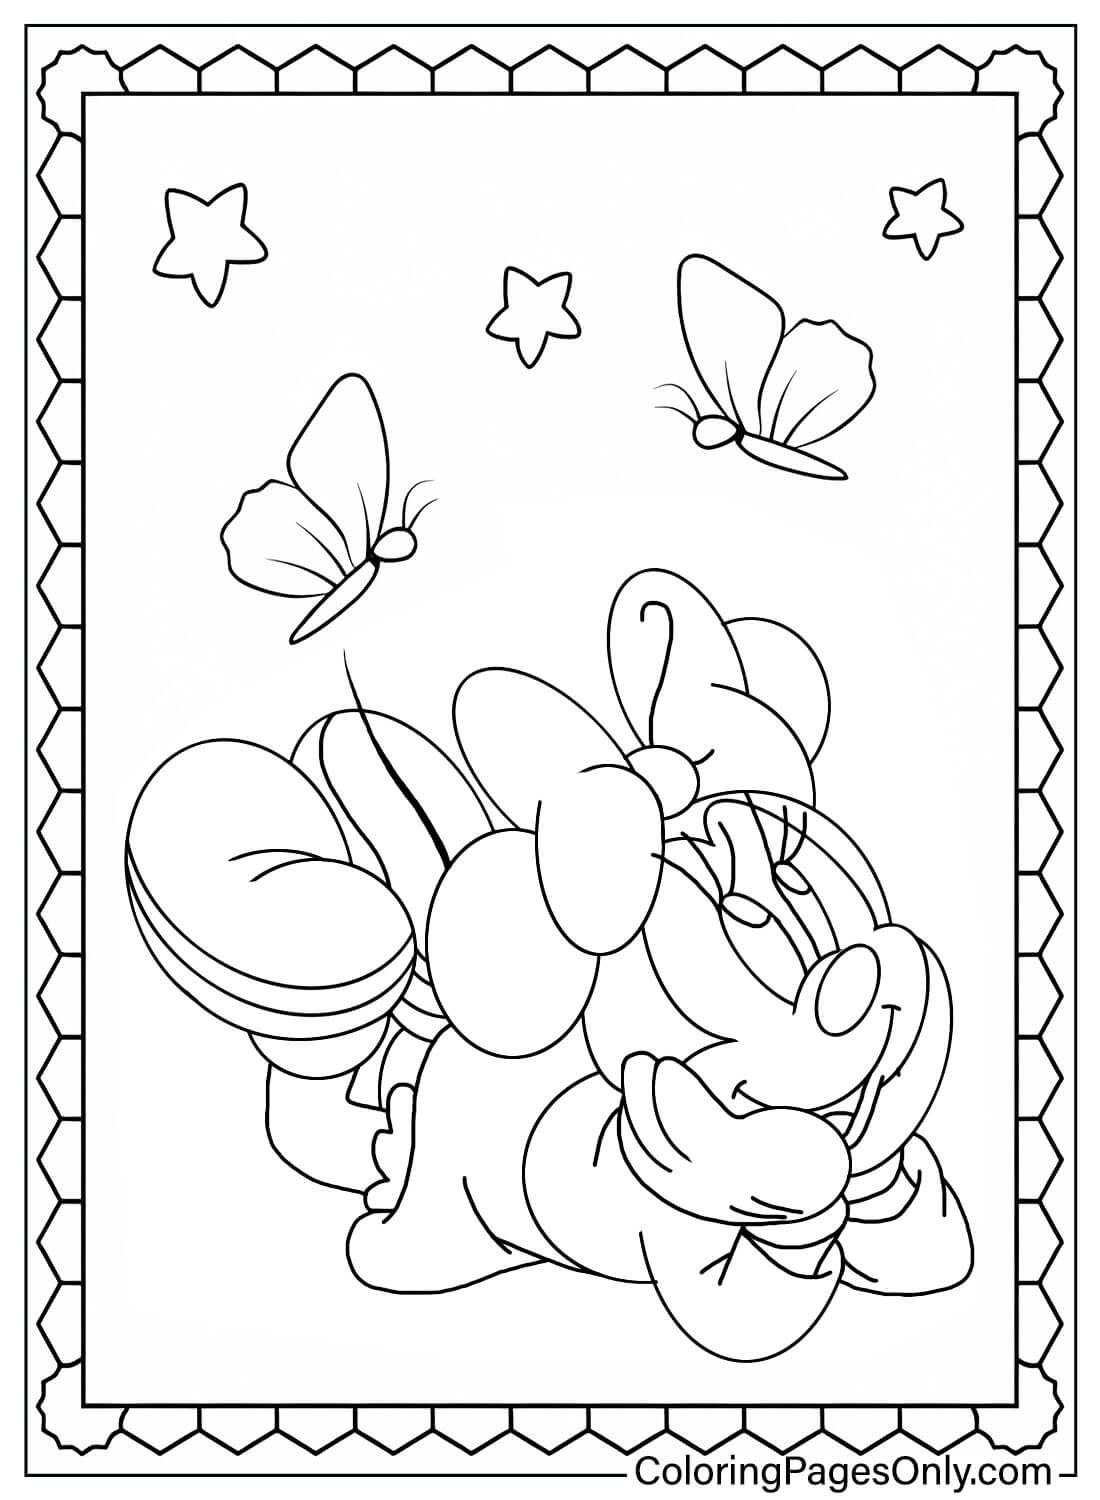 Adorável página para colorir da Minnie Mouse da Minnie Mouse